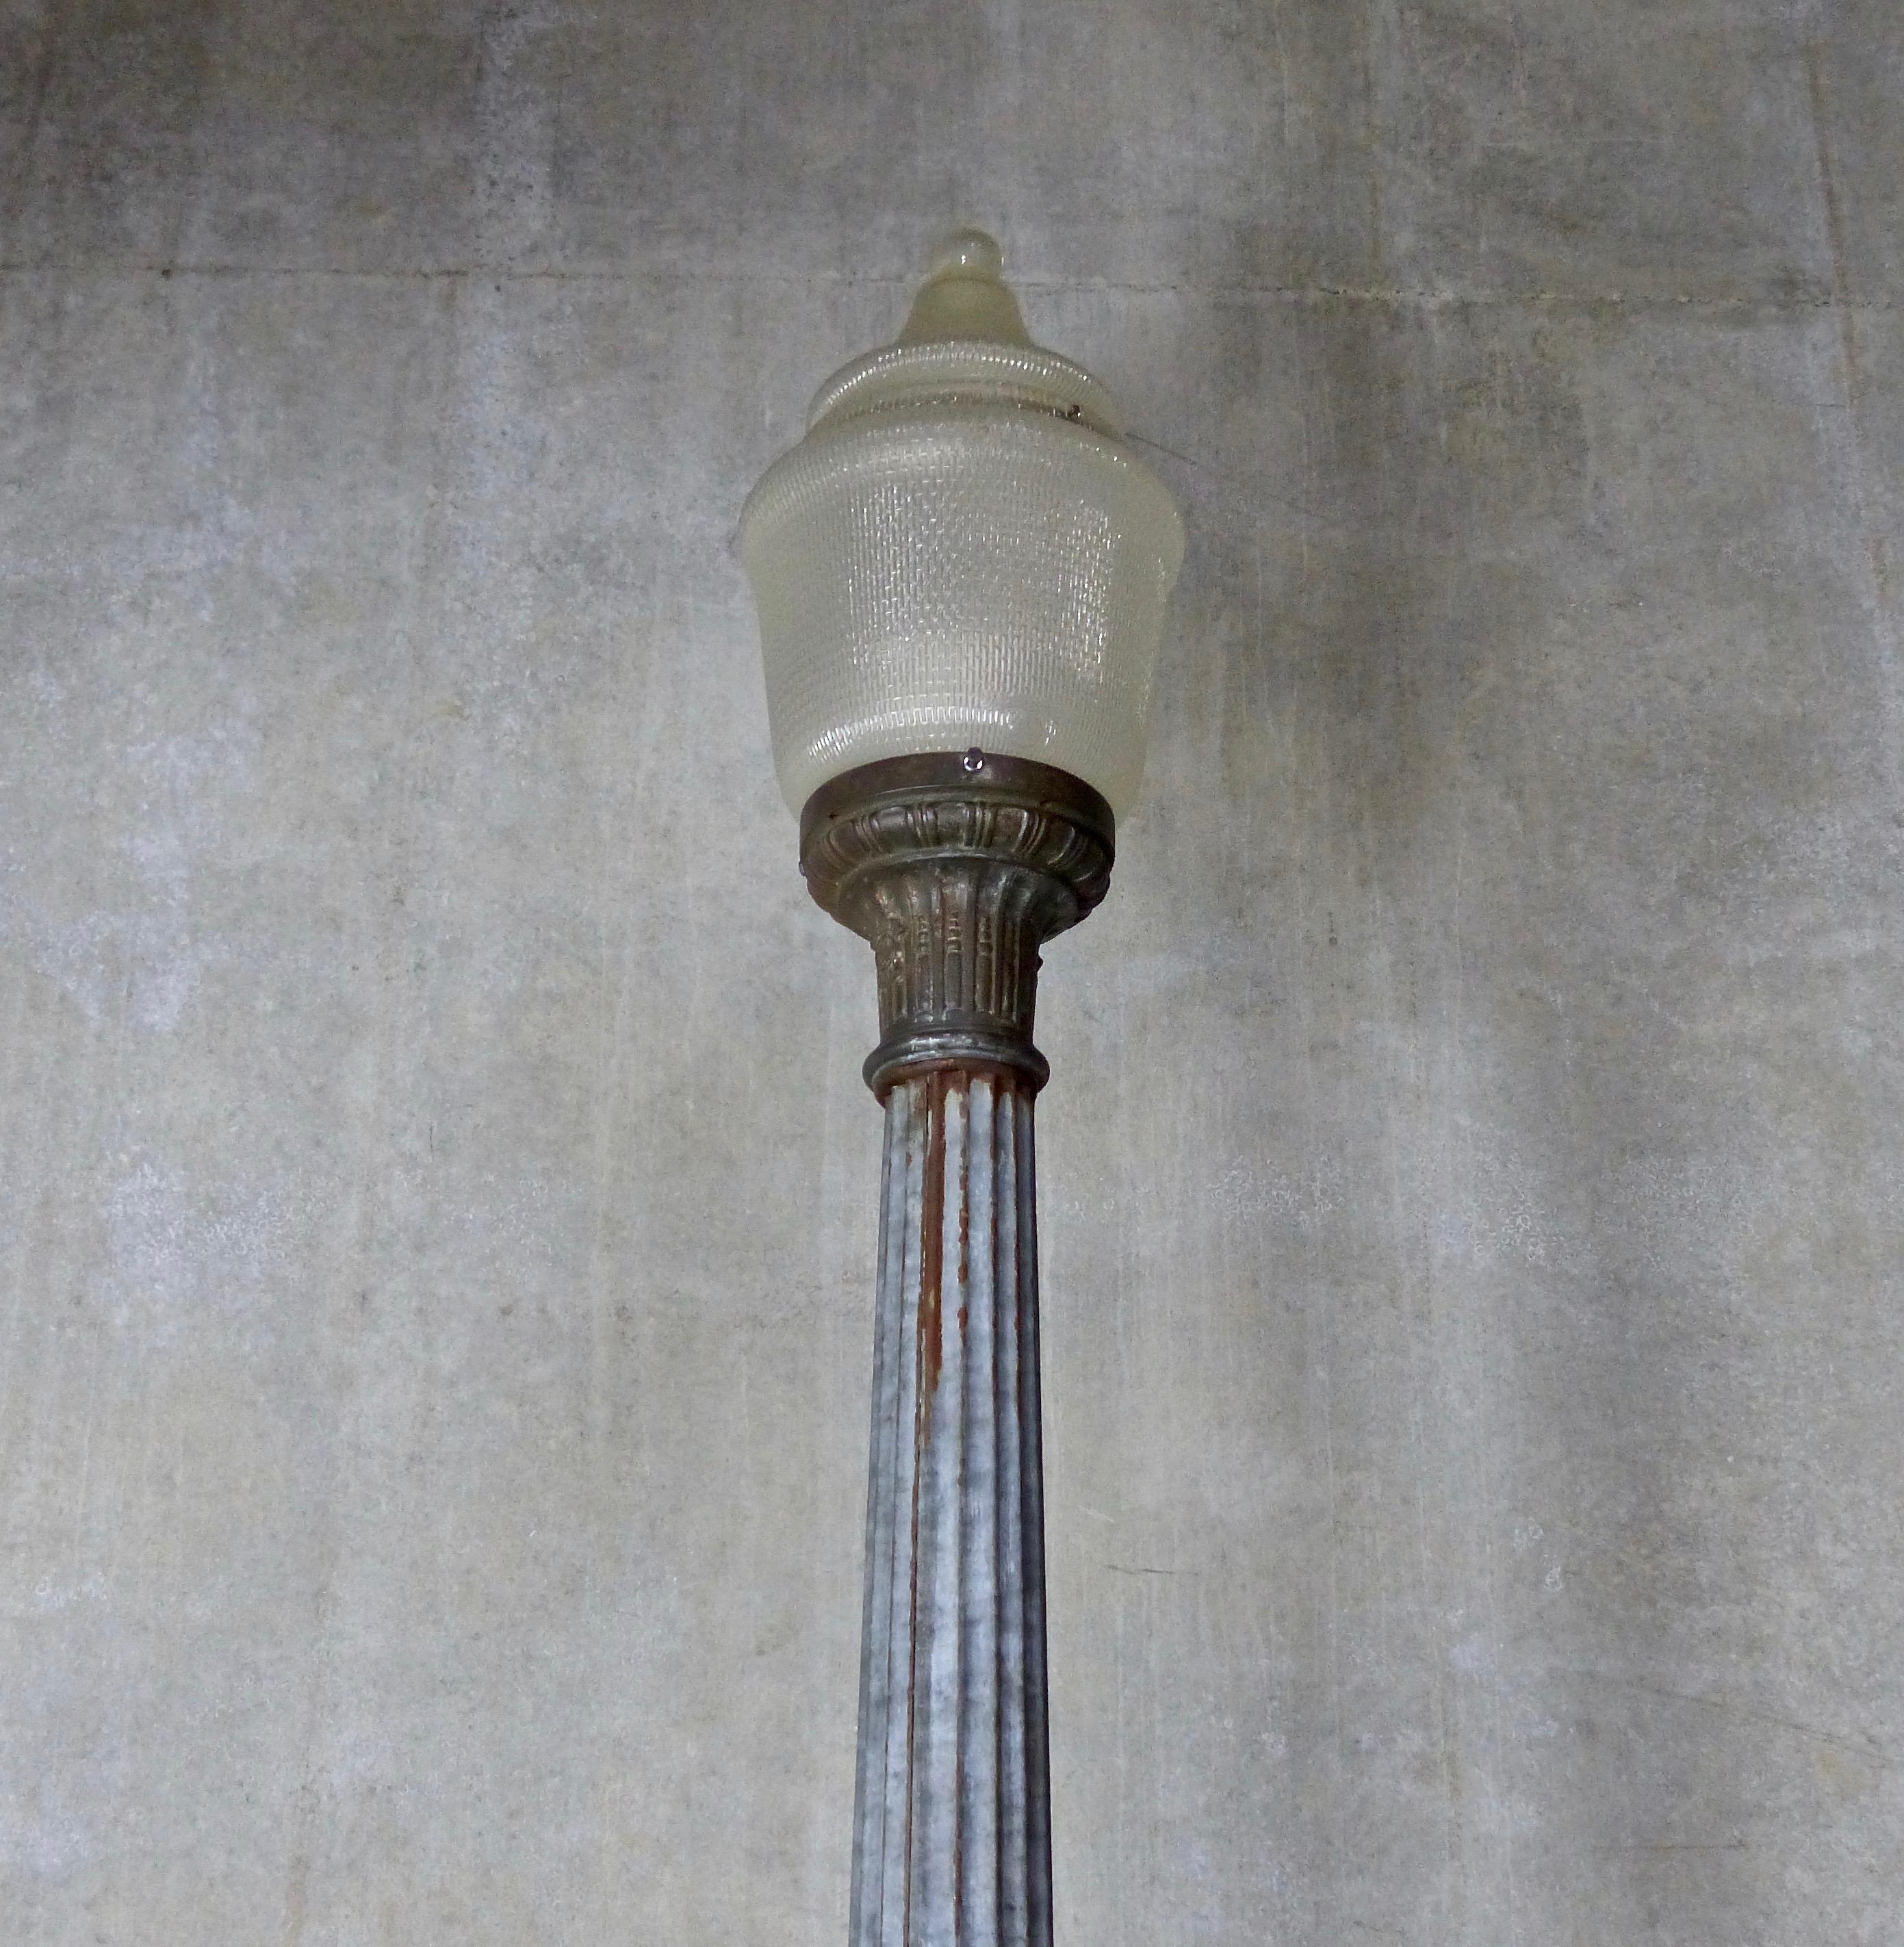 1930s Fluted Zinc Street Lamp with Original Shade (amerikanisch)